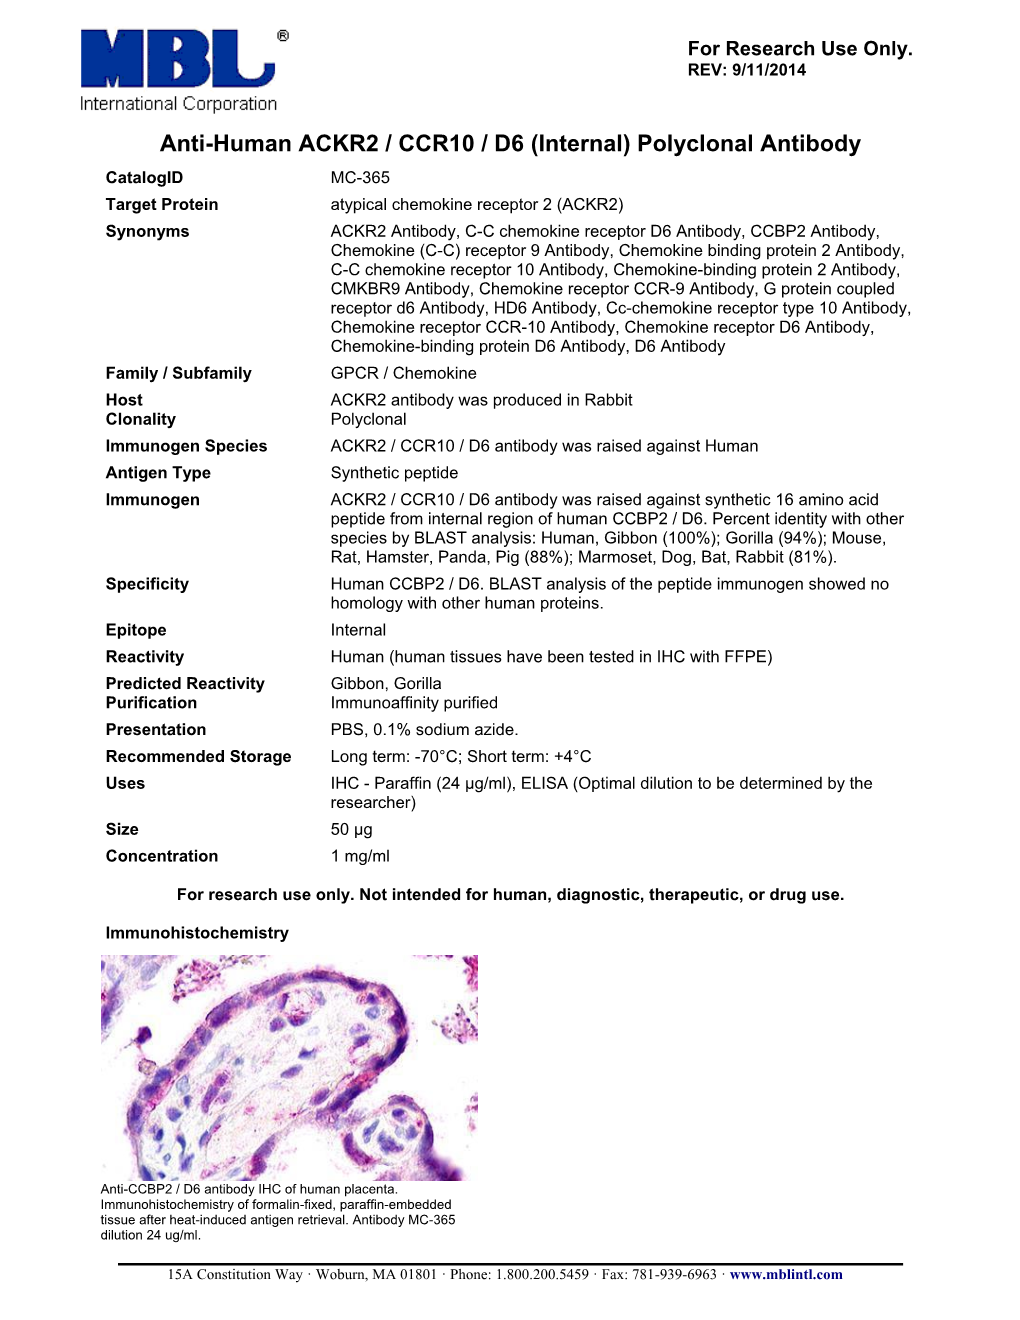 Anti-Human ACKR2 / CCR10 / D6 (Internal) Polyclonal Antibody